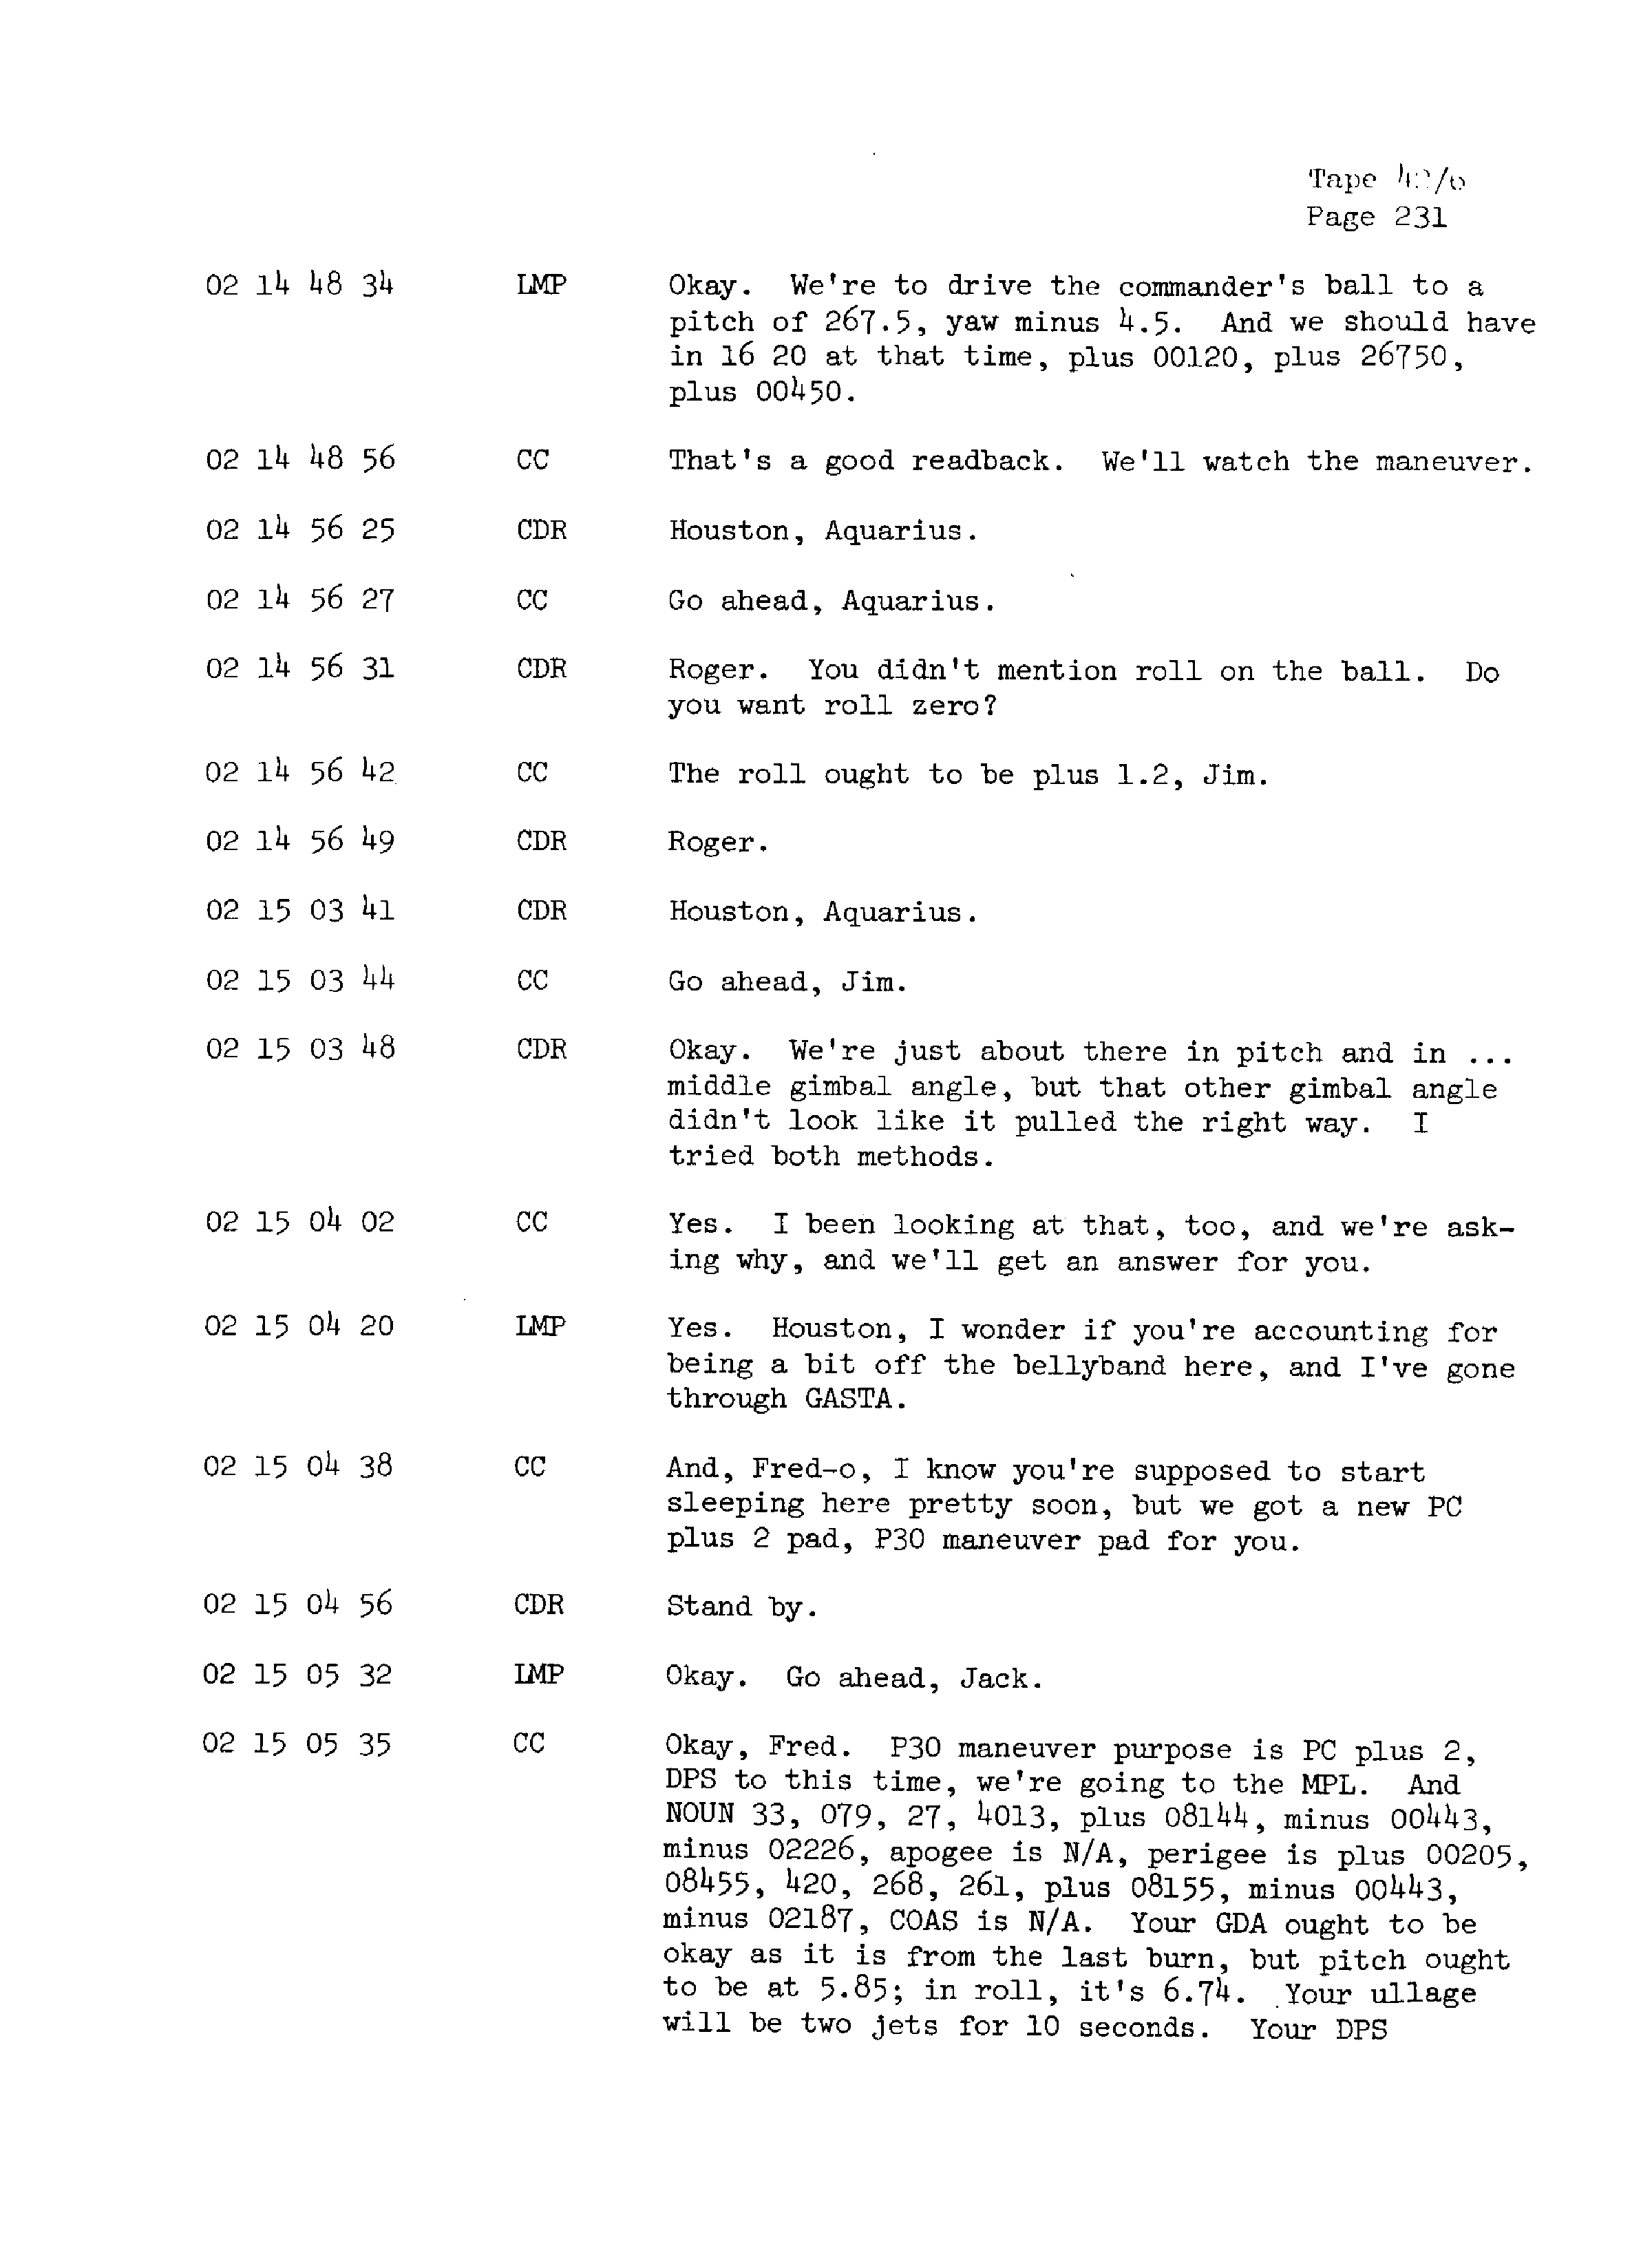 Page 238 of Apollo 13’s original transcript